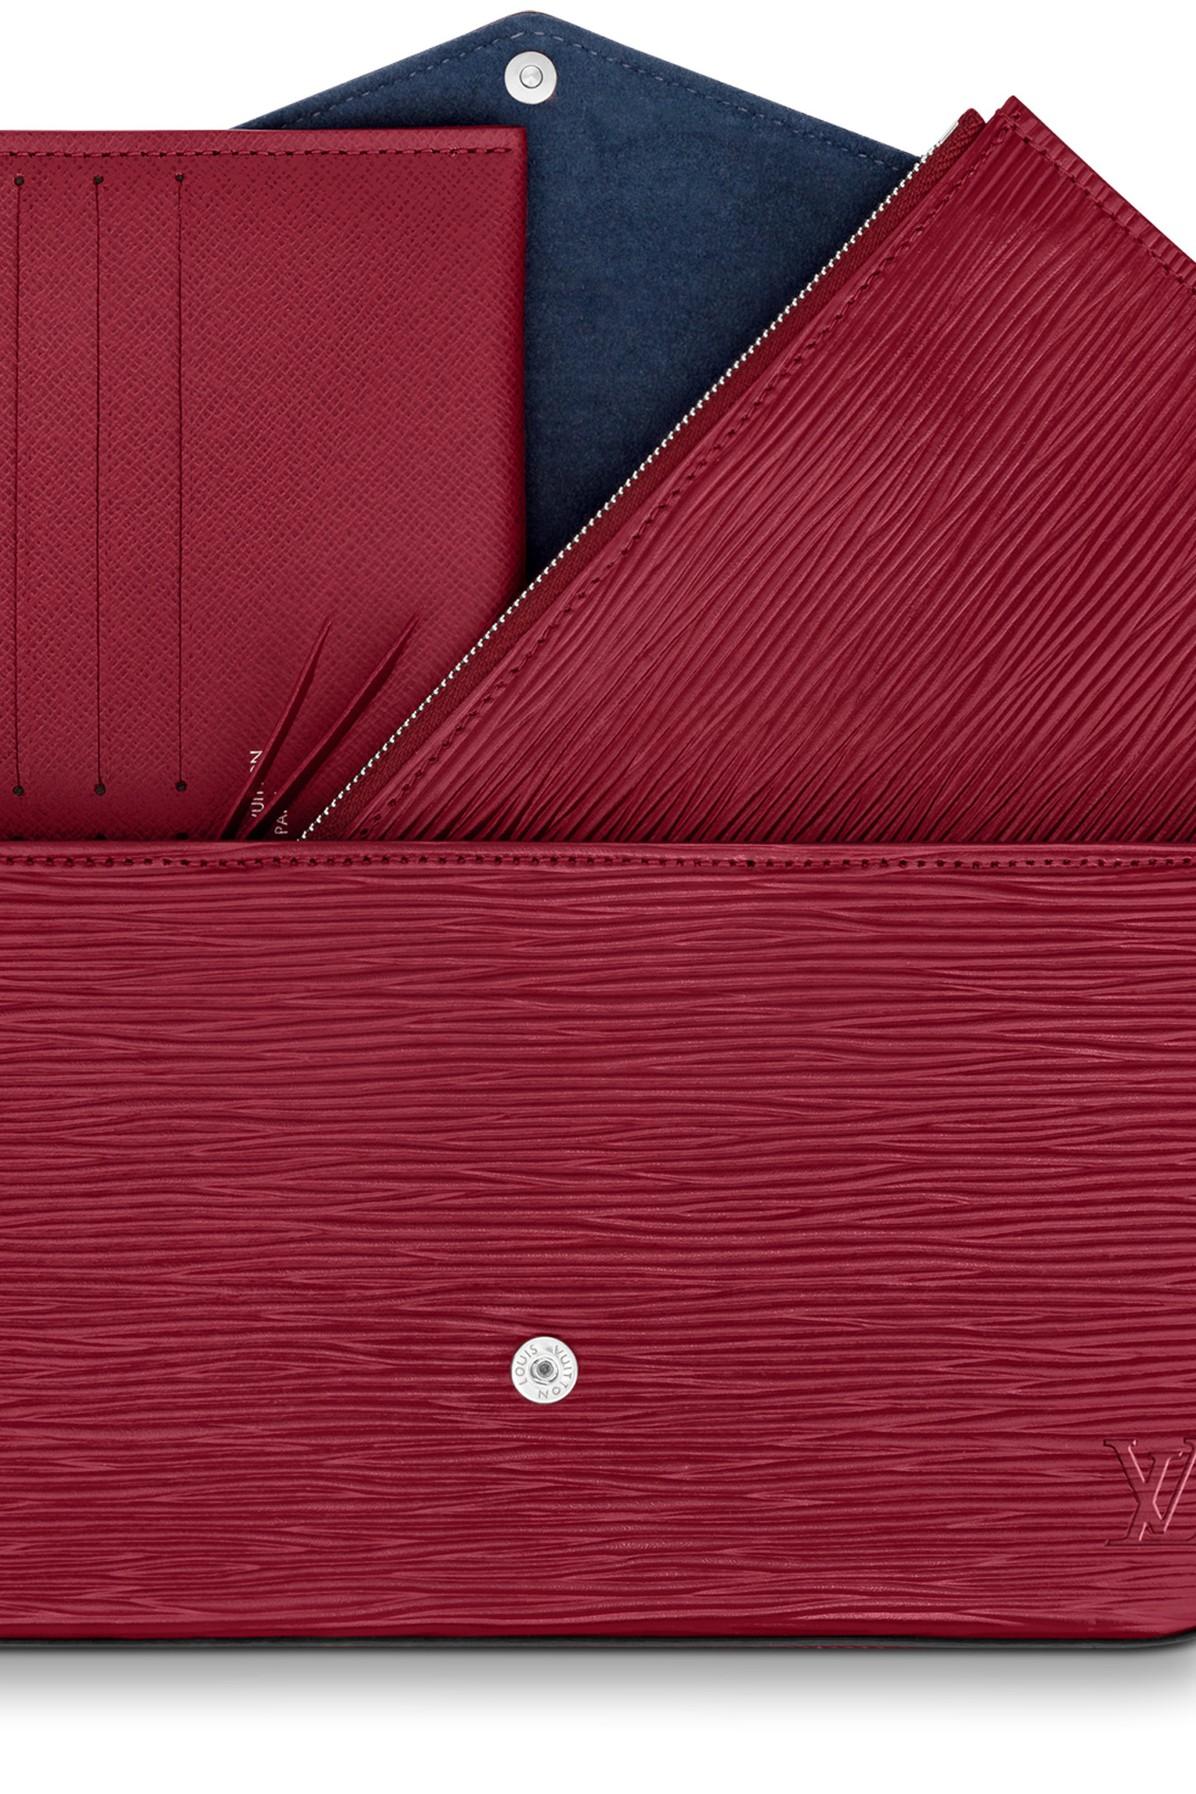 Louis Vuitton Pochette Felicie Epi (Without Accessories